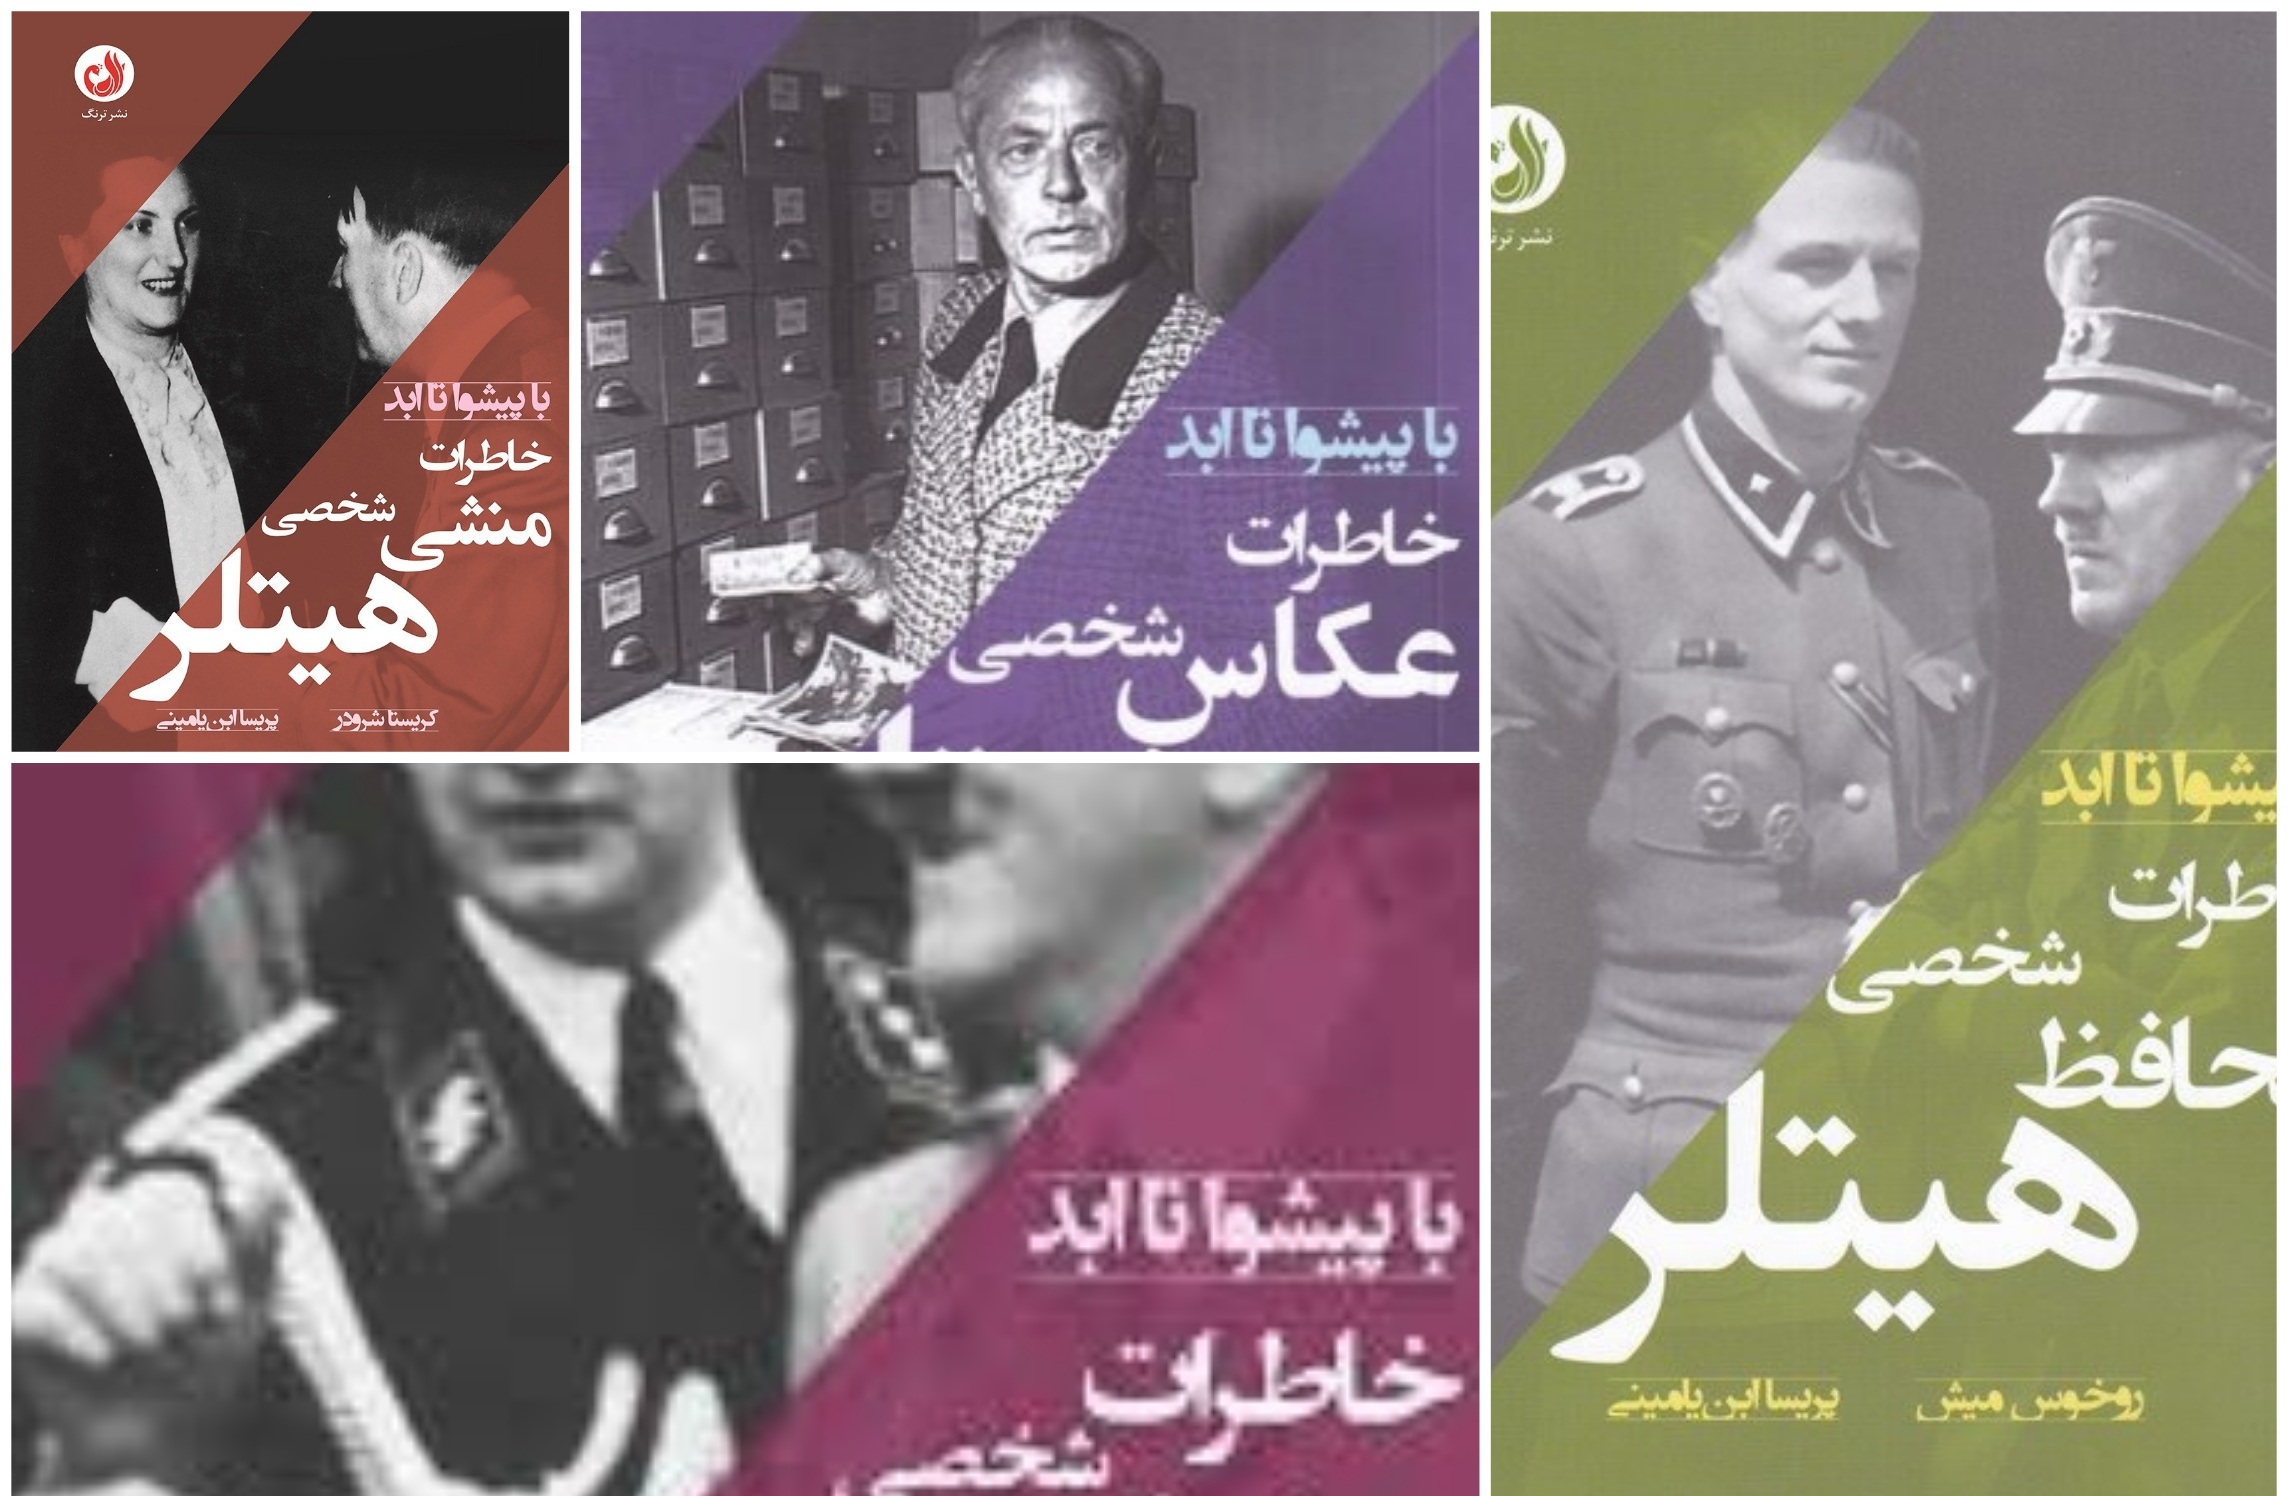 منابع موجود در بازار کتاب ایران که به شخص هیتلر